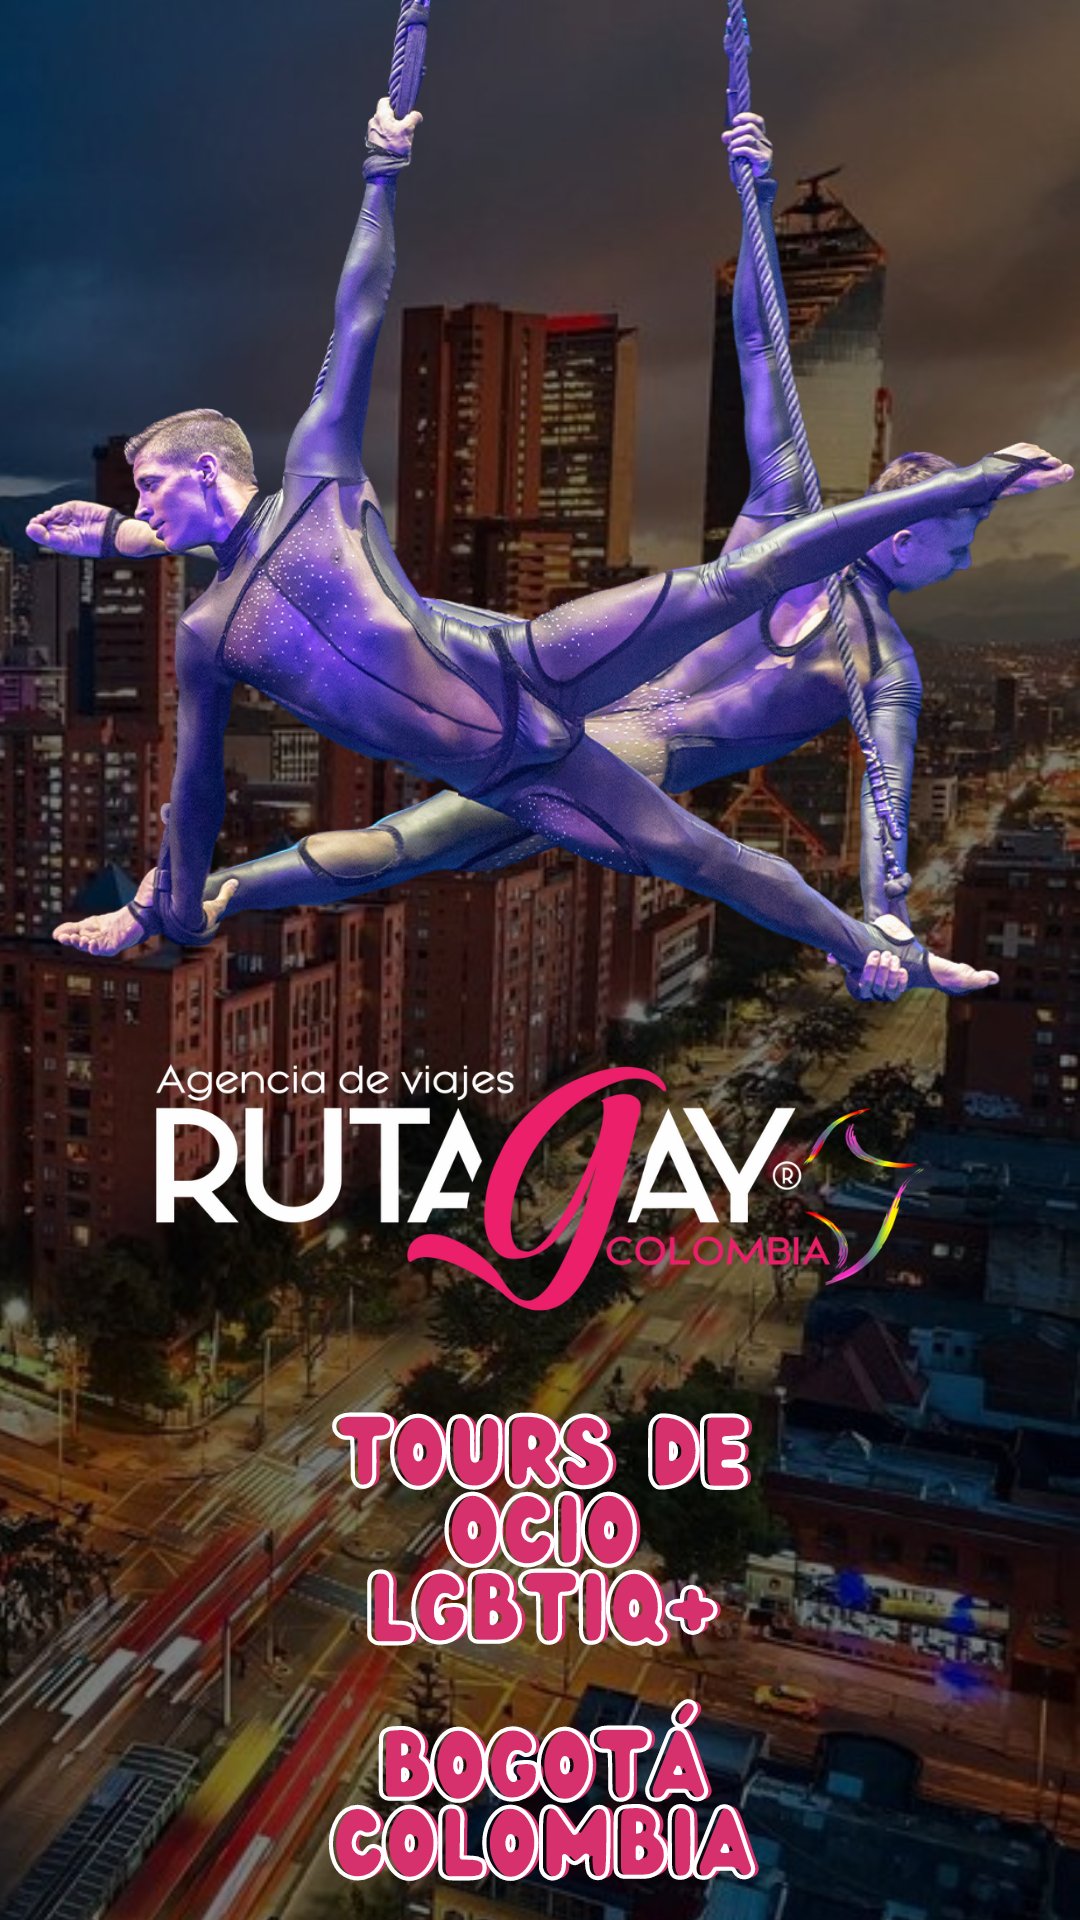 BOGOTA TOURS OCIO LGBTIQ+  ESPAÑOL